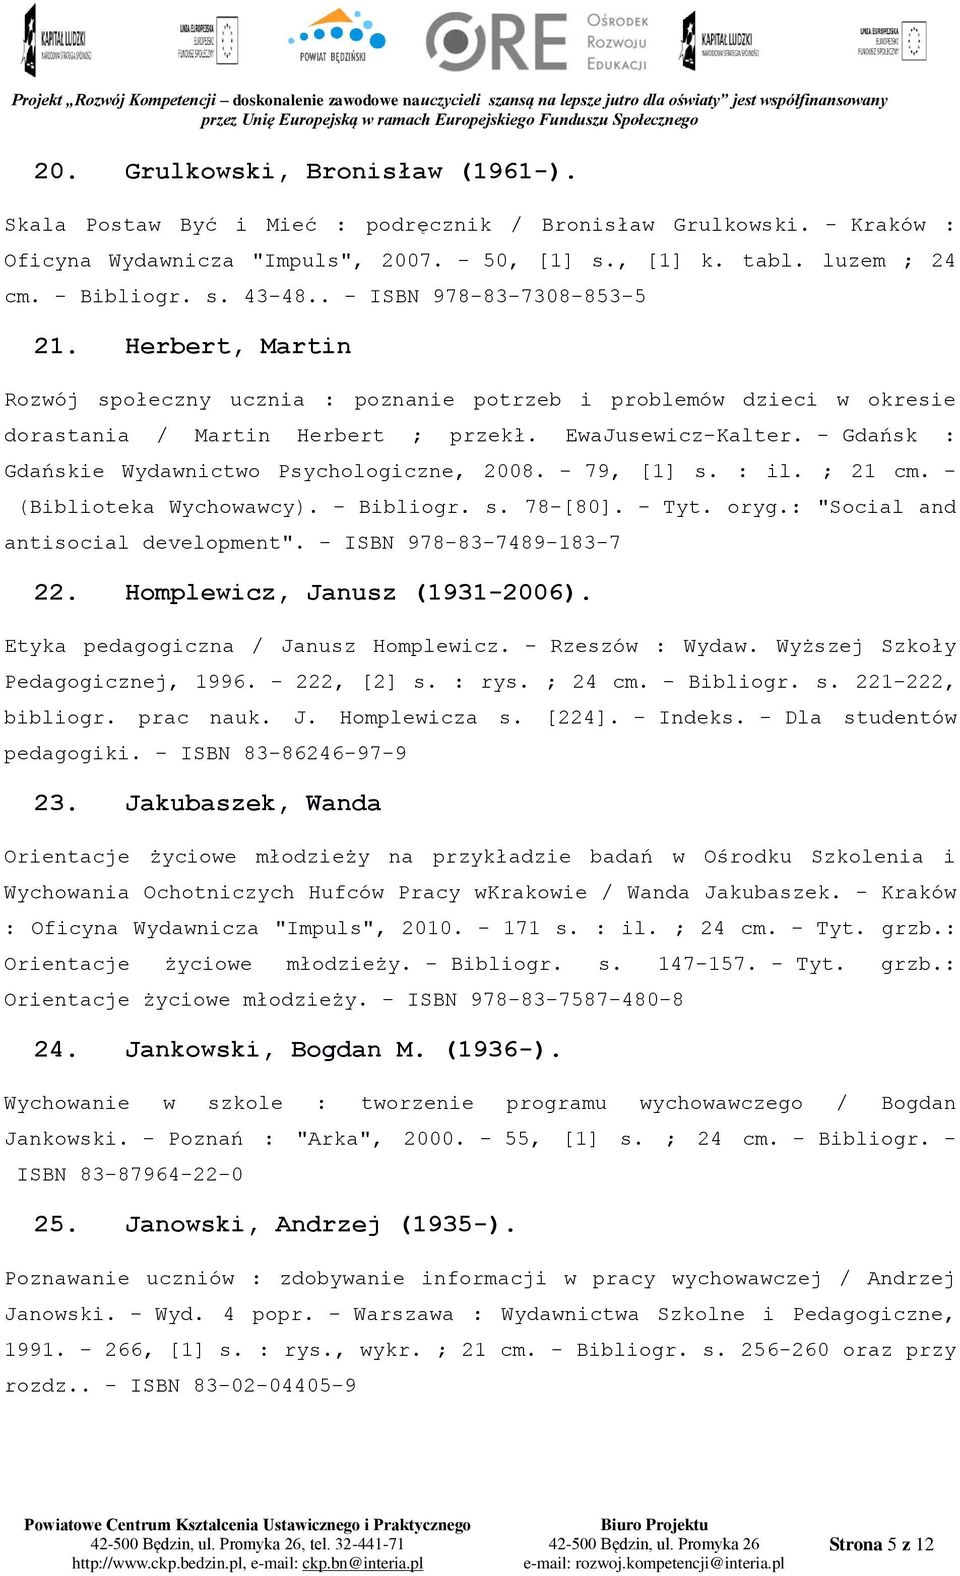 - Gdańsk : Gdańskie Wydawnictwo Psychologiczne, 2008. - 79, [1] s. : il. ; 21 cm. - (Biblioteka Wychowawcy). - Bibliogr. s. 78-[80]. - Tyt. oryg.: "Social and antisocial development".